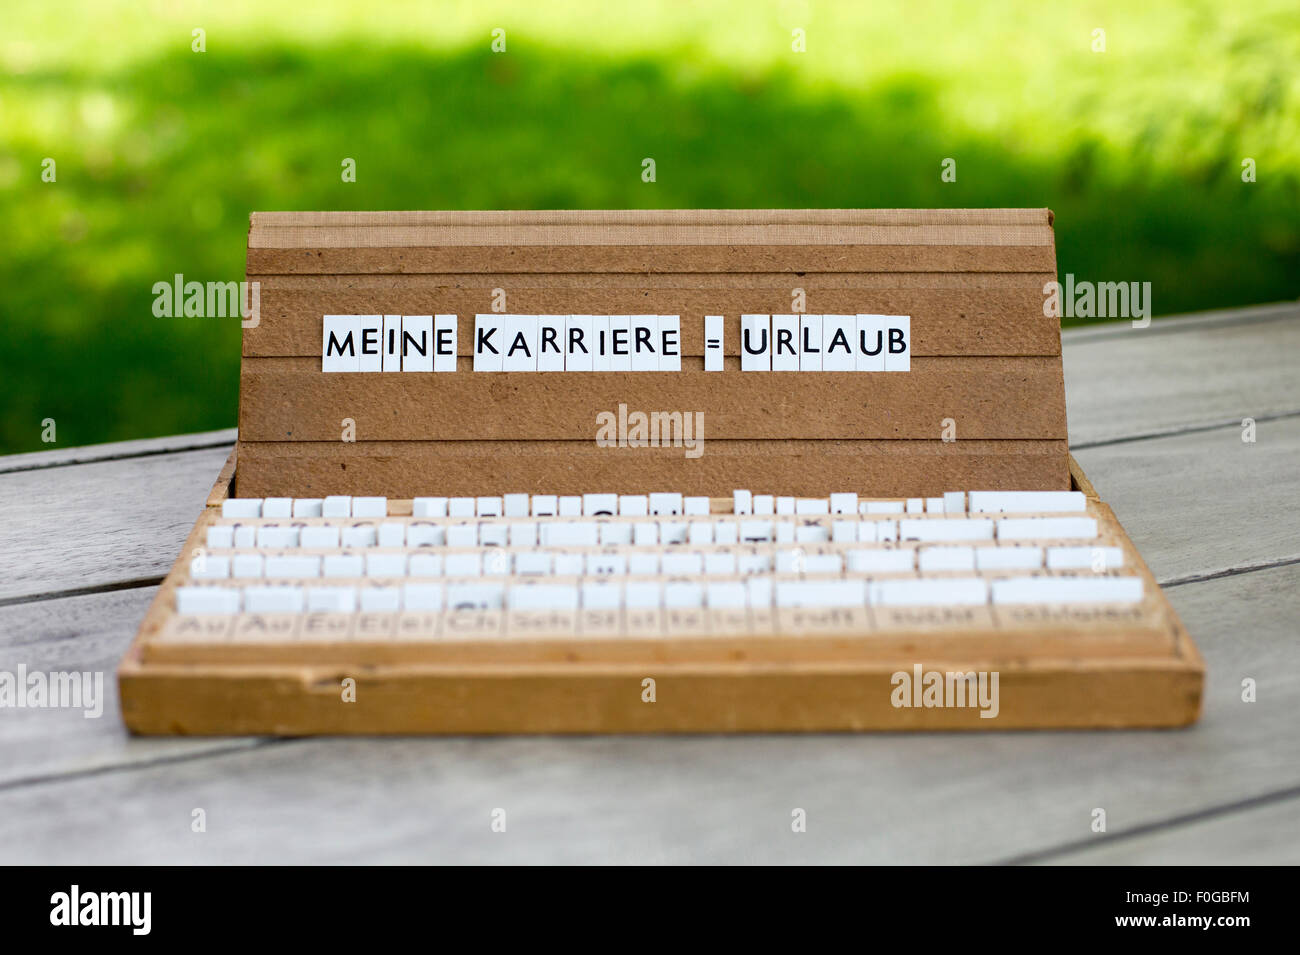 Une boîte aux lettres avec le texte allemand : 'Meine Karriere =Urlaub' (ma carrière  = vacances) Banque D'Images